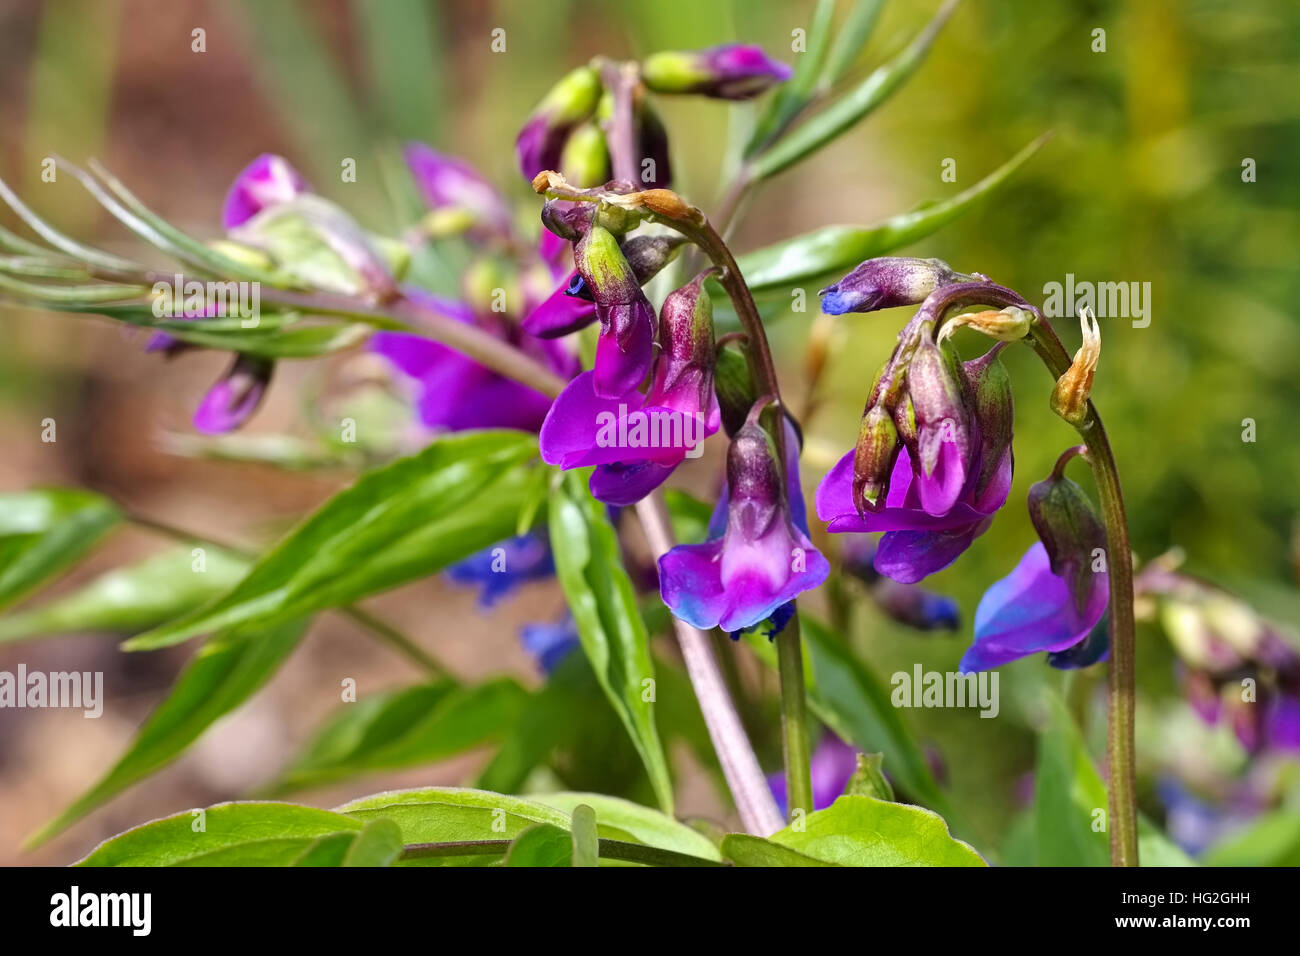 Frühlings-Platterbse im Frühling - spring pea or Lathyrus vernus is blooming in garden Stock Photo